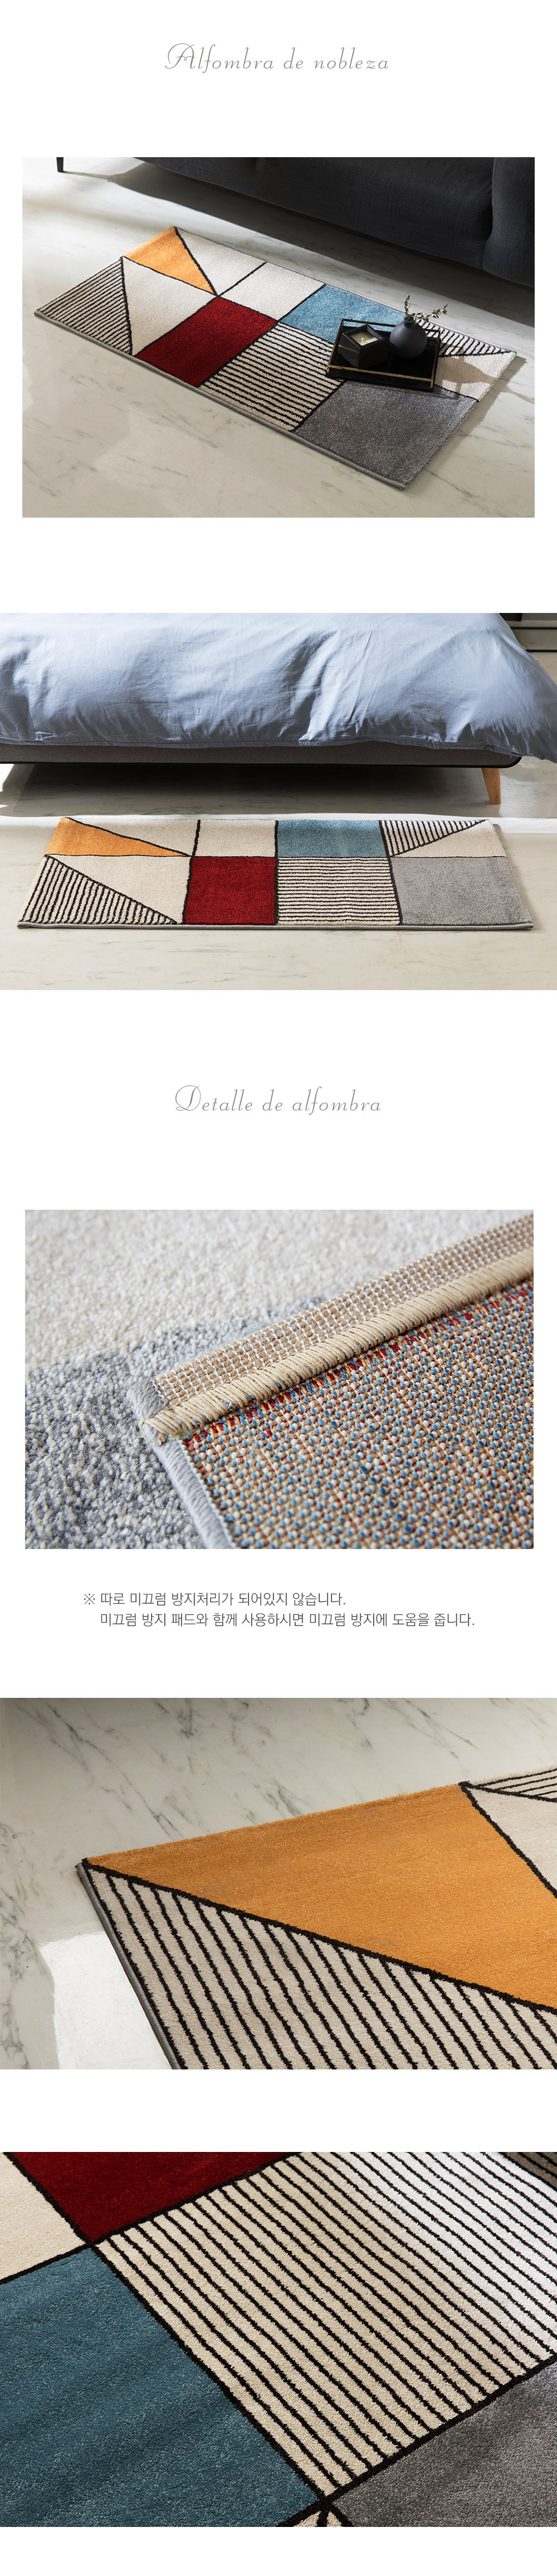 spain carpet nobleza rug - detail cut